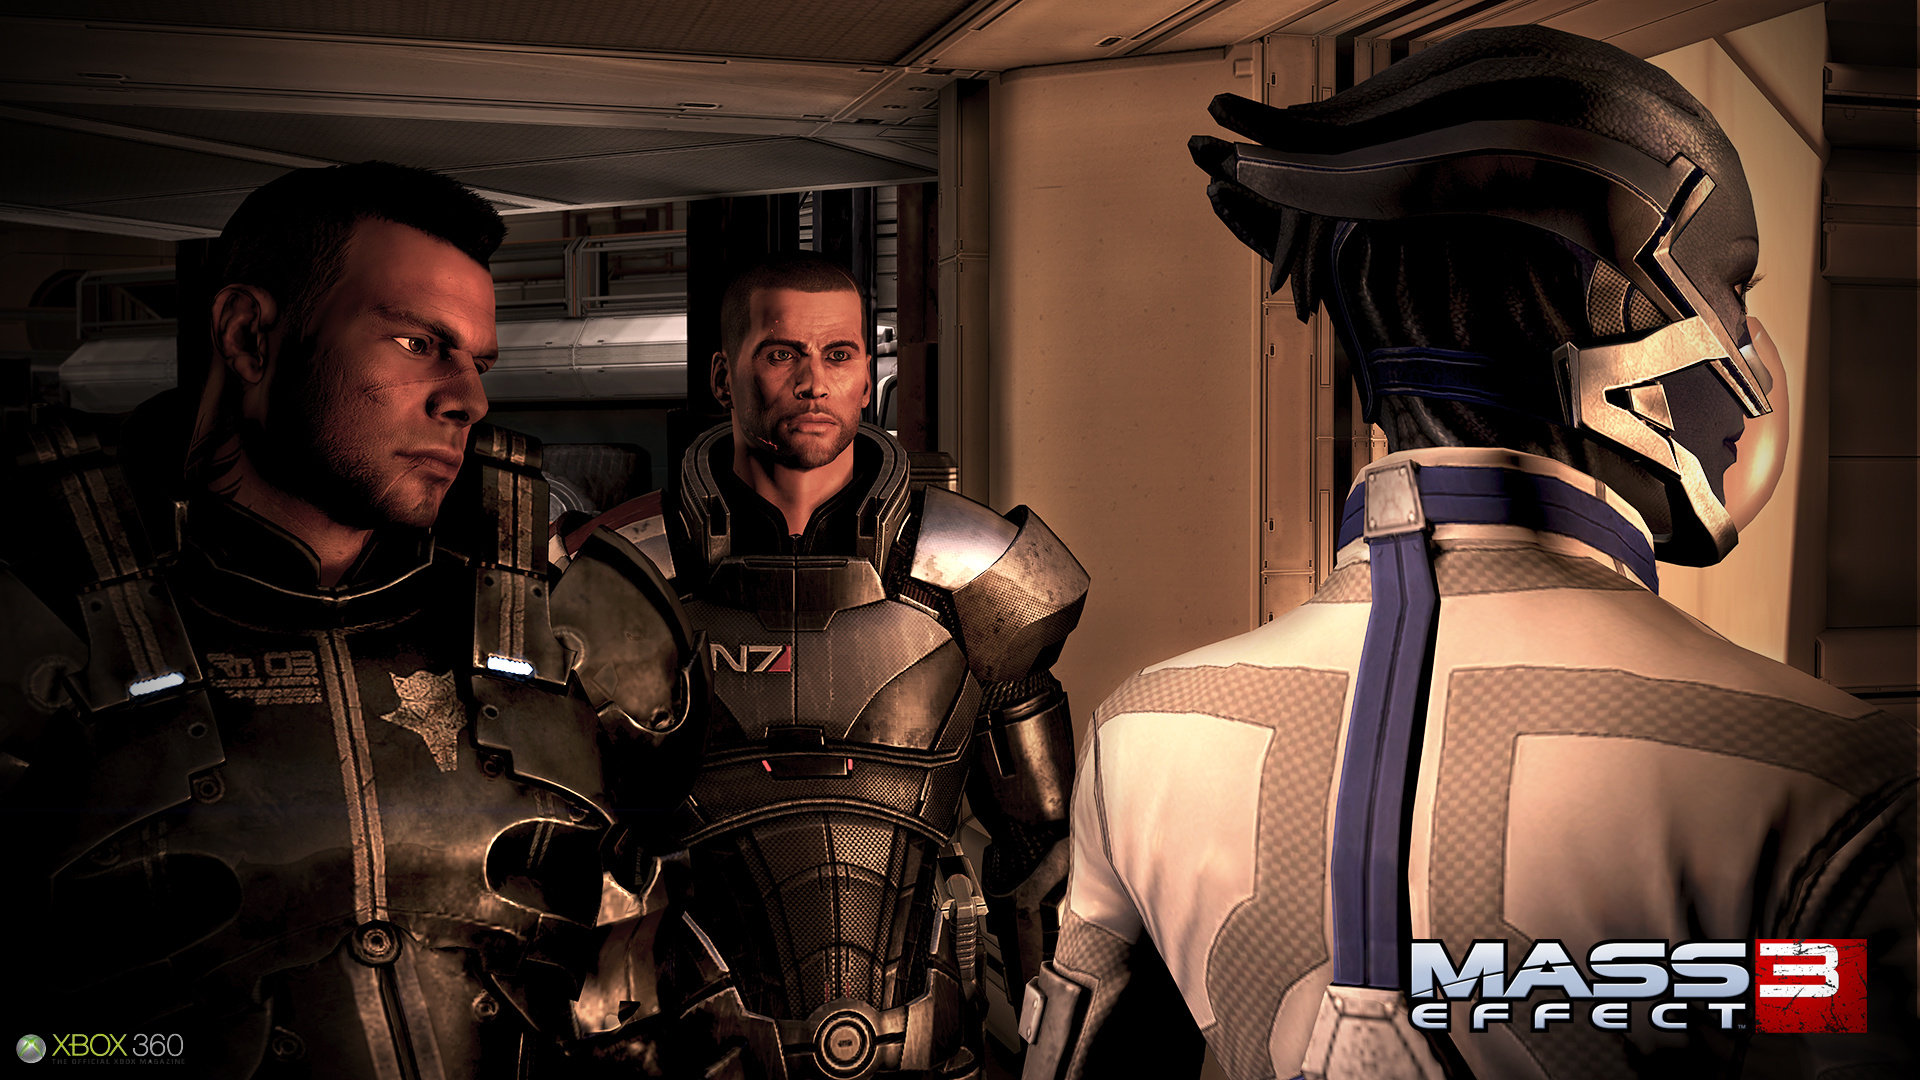 Immagine pubblicata in relazione al seguente contenuto: Mass Effect 3  in arrivo e BioWare parla di Mass Effect 4 | Nome immagine: news16590_3.jpg